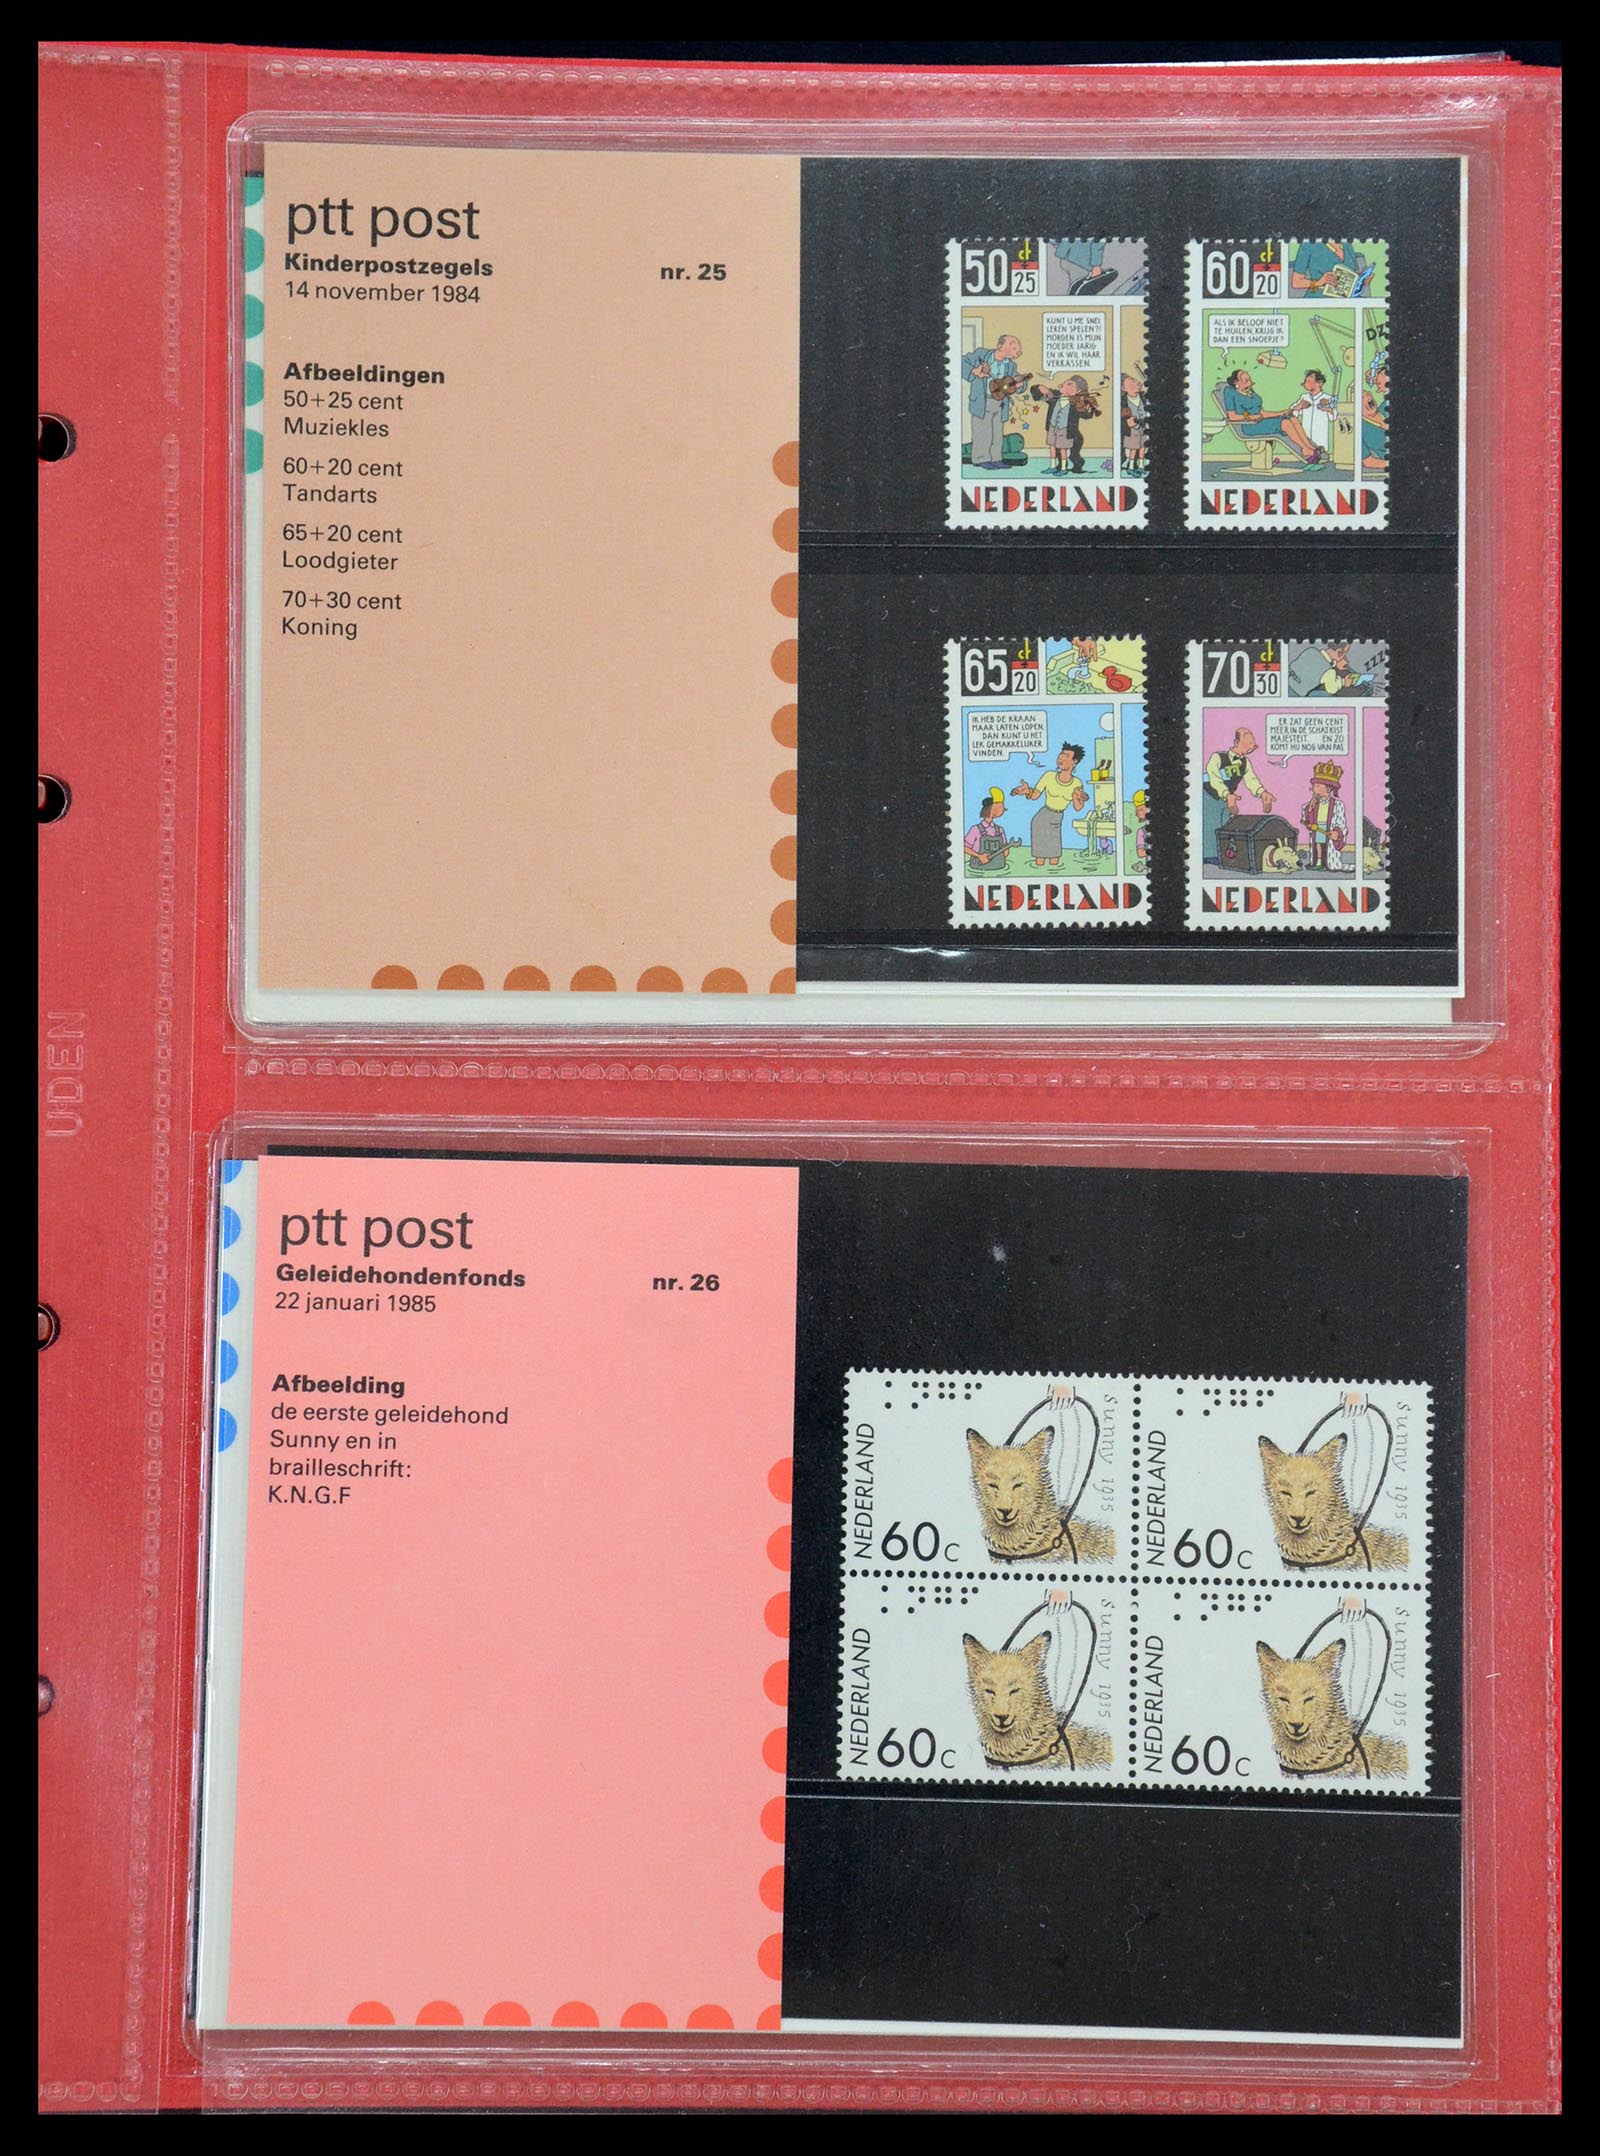 35692 013 - Stamp Collection 35692 Netherlands presentation packs 1982-2021!!